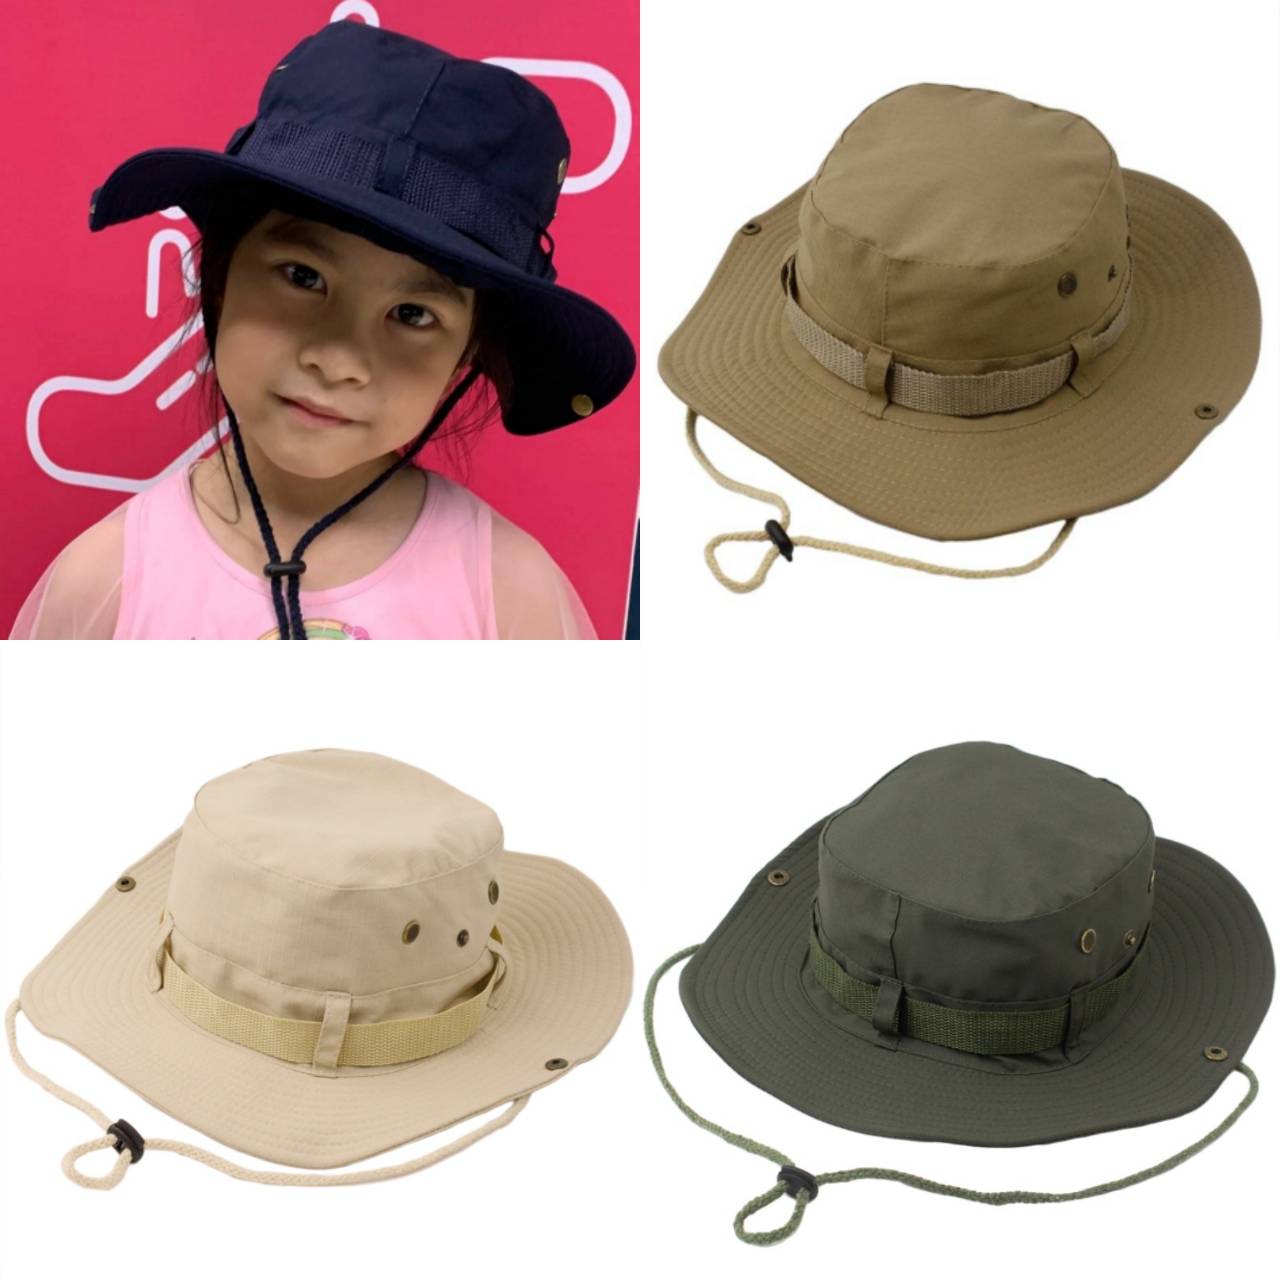 ☆พร้อมส่ง☆หมวก หมวกเด็ก หมวกเดินป่าสำหรับเด็ก 2ปี-8ปี หมวกบัคเก็ต หมวกเด็กชาย หมวกเด็กโต  หมวกปีกกว้างเดินป่า  หมวกเดินป่า รอบหัว:52-54 cm.